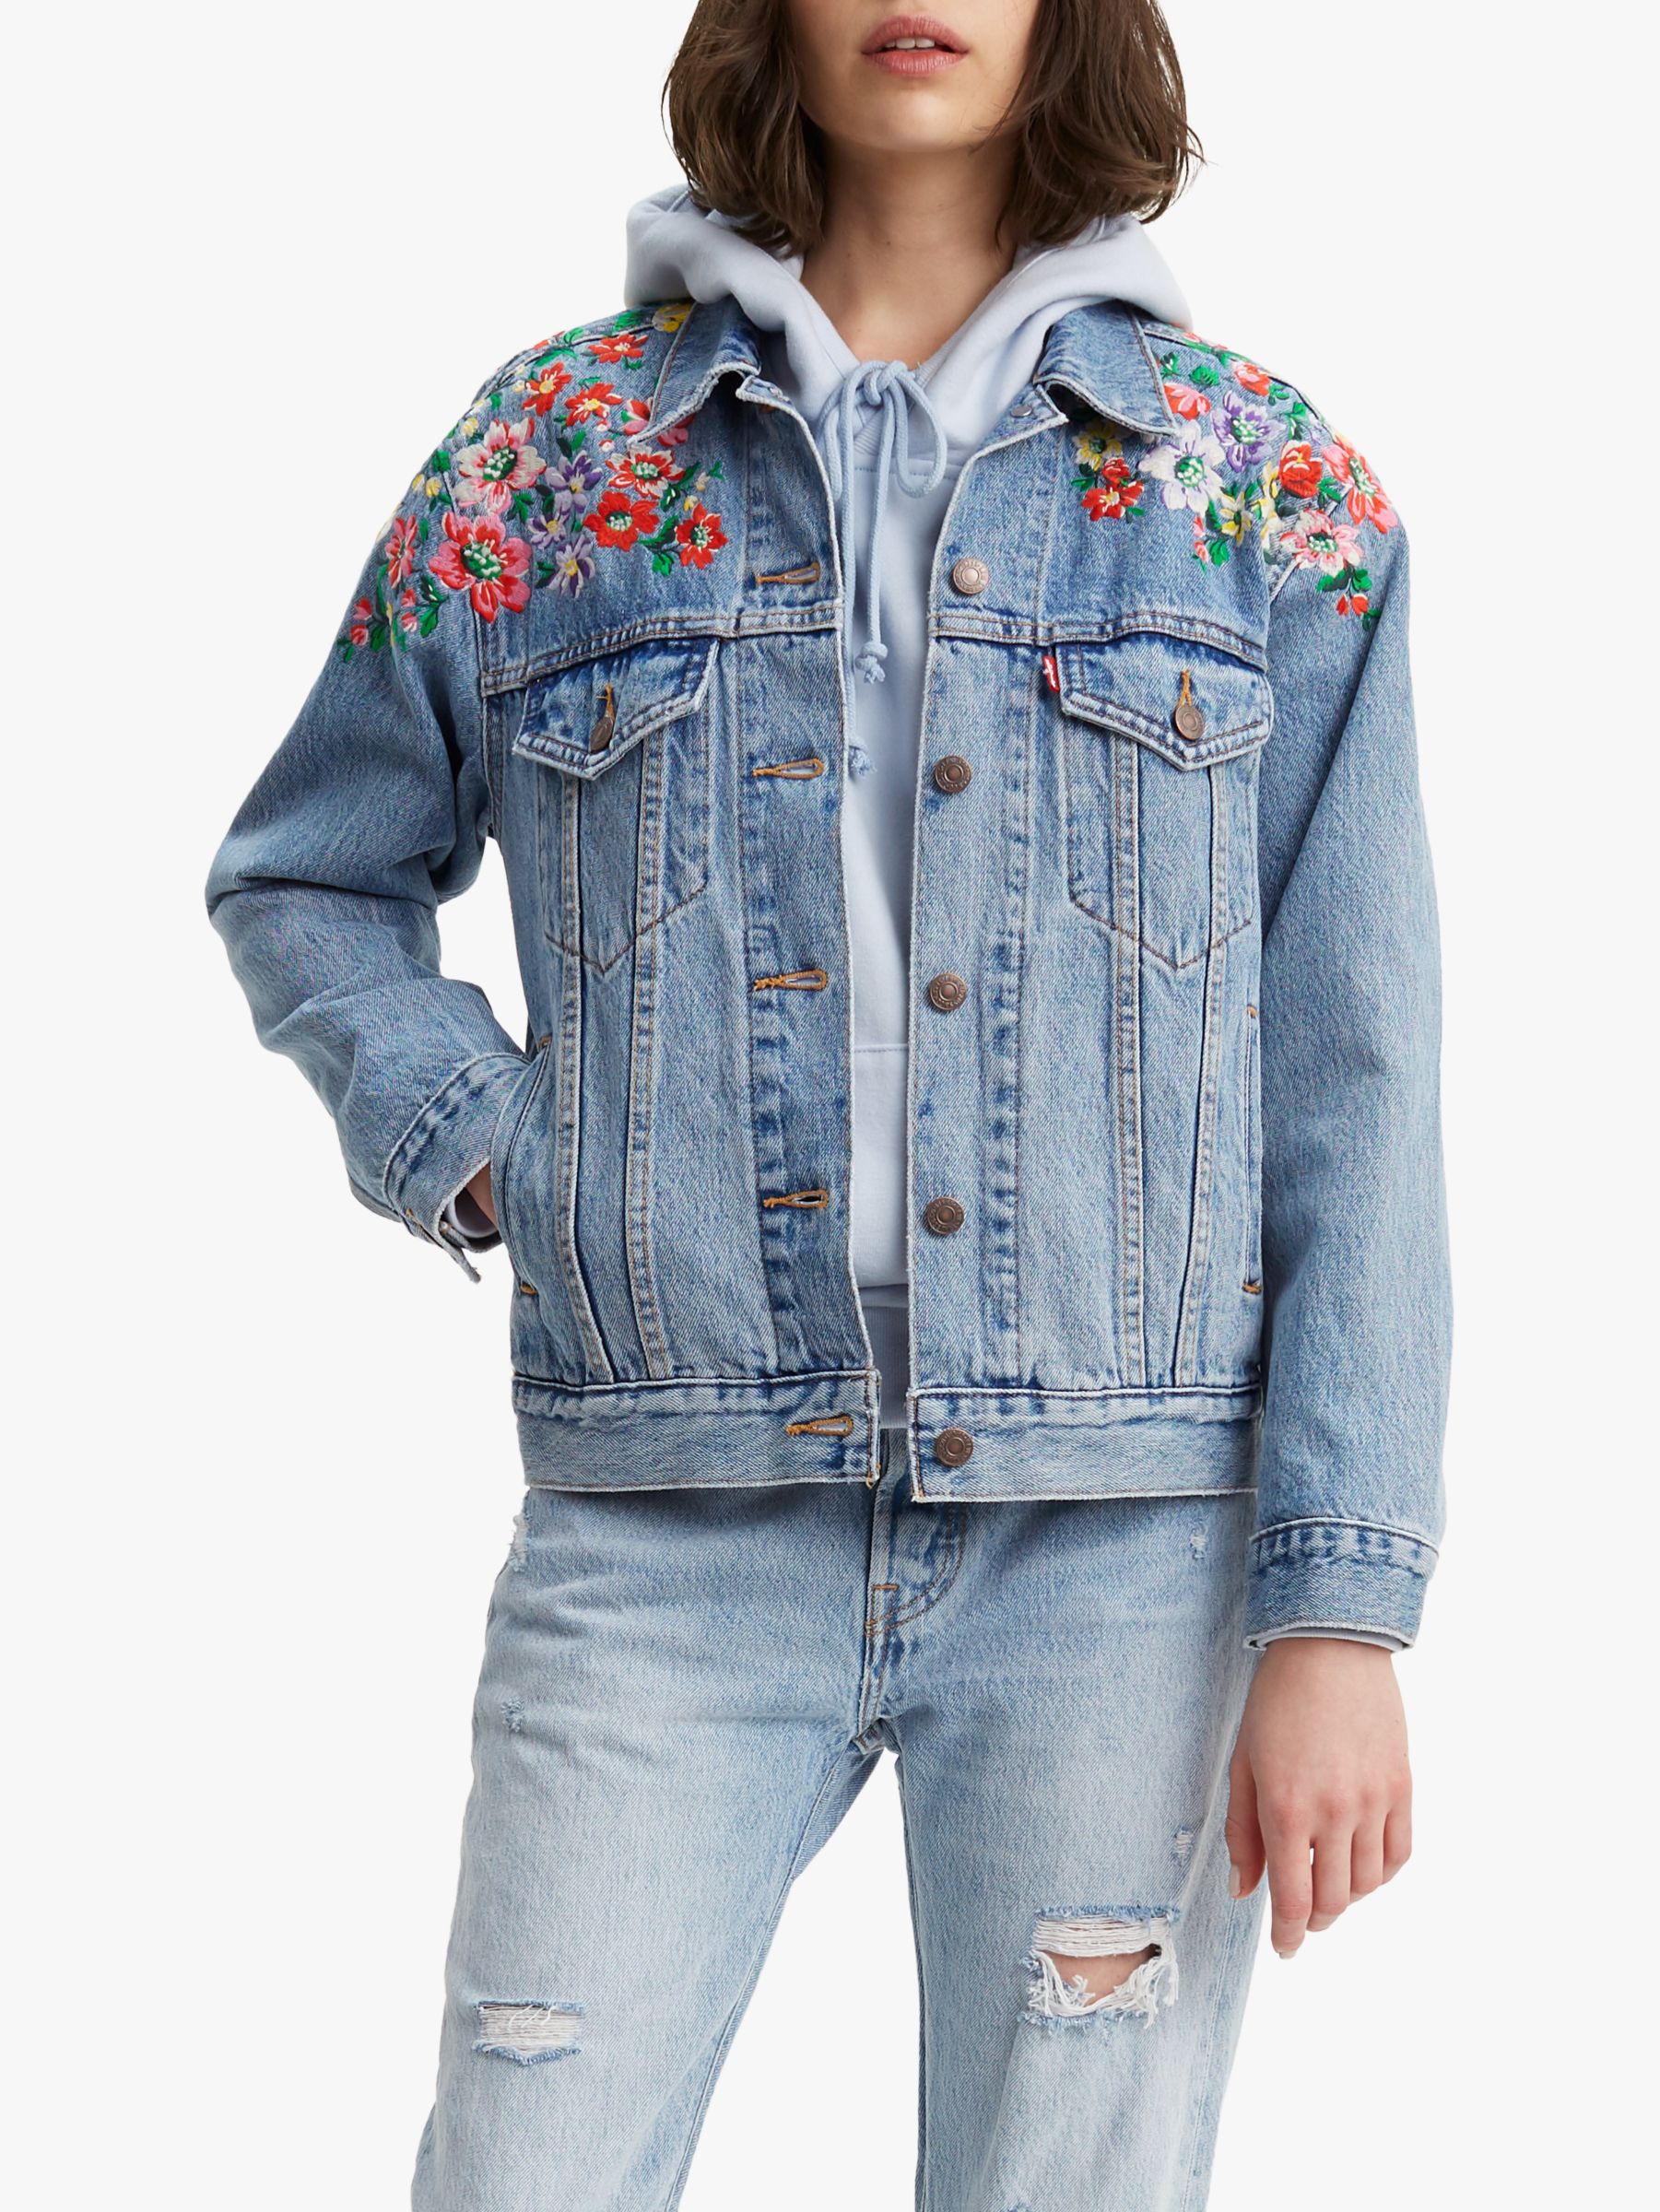 Levi's Ex Boyfriend Embroidered Trucker Denim Jacket, Hearts Of Flowers